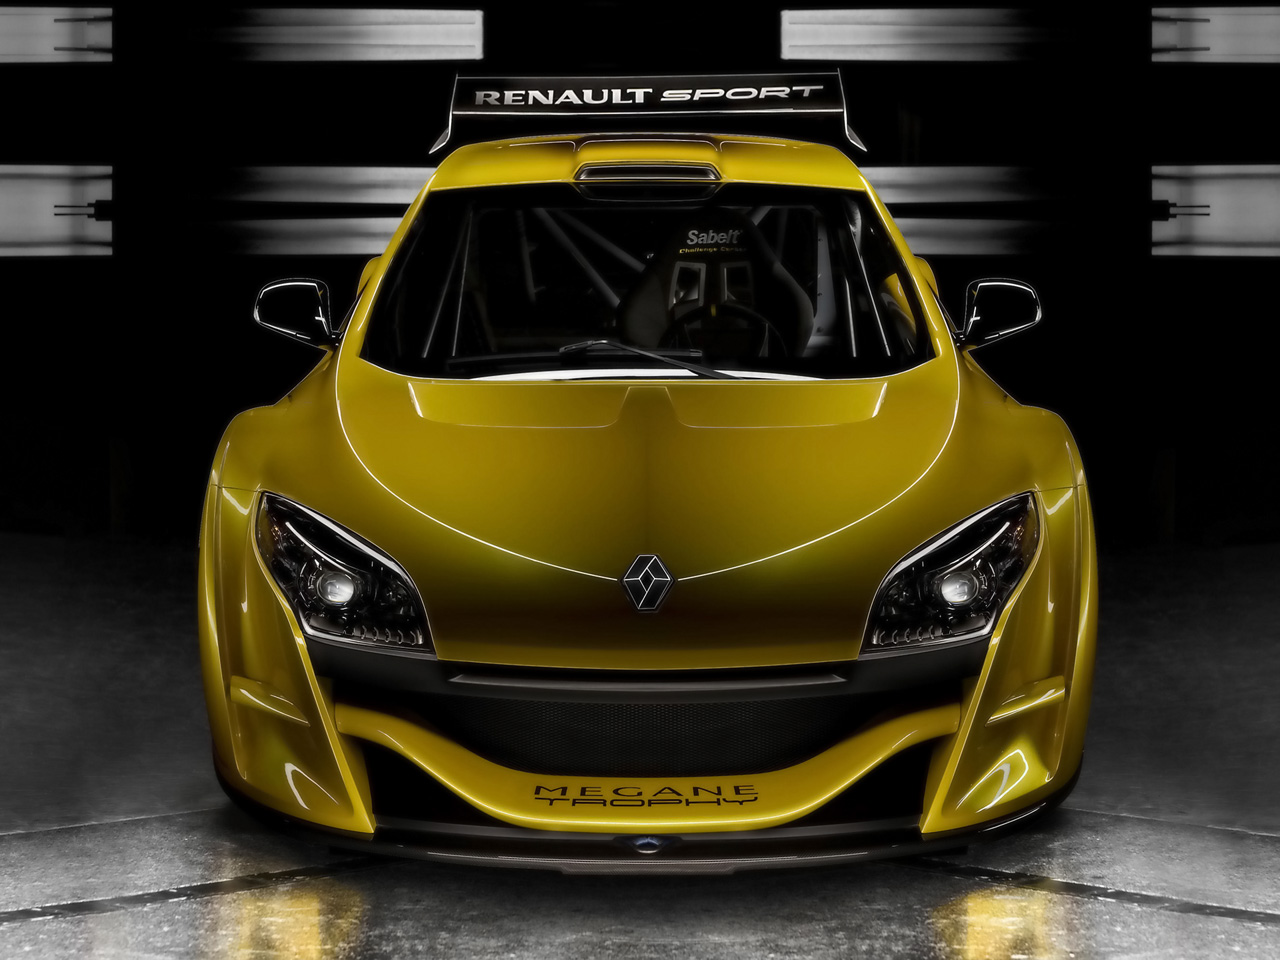 2009-Renault-Megane-Trophy-Front-1280x960.jpg